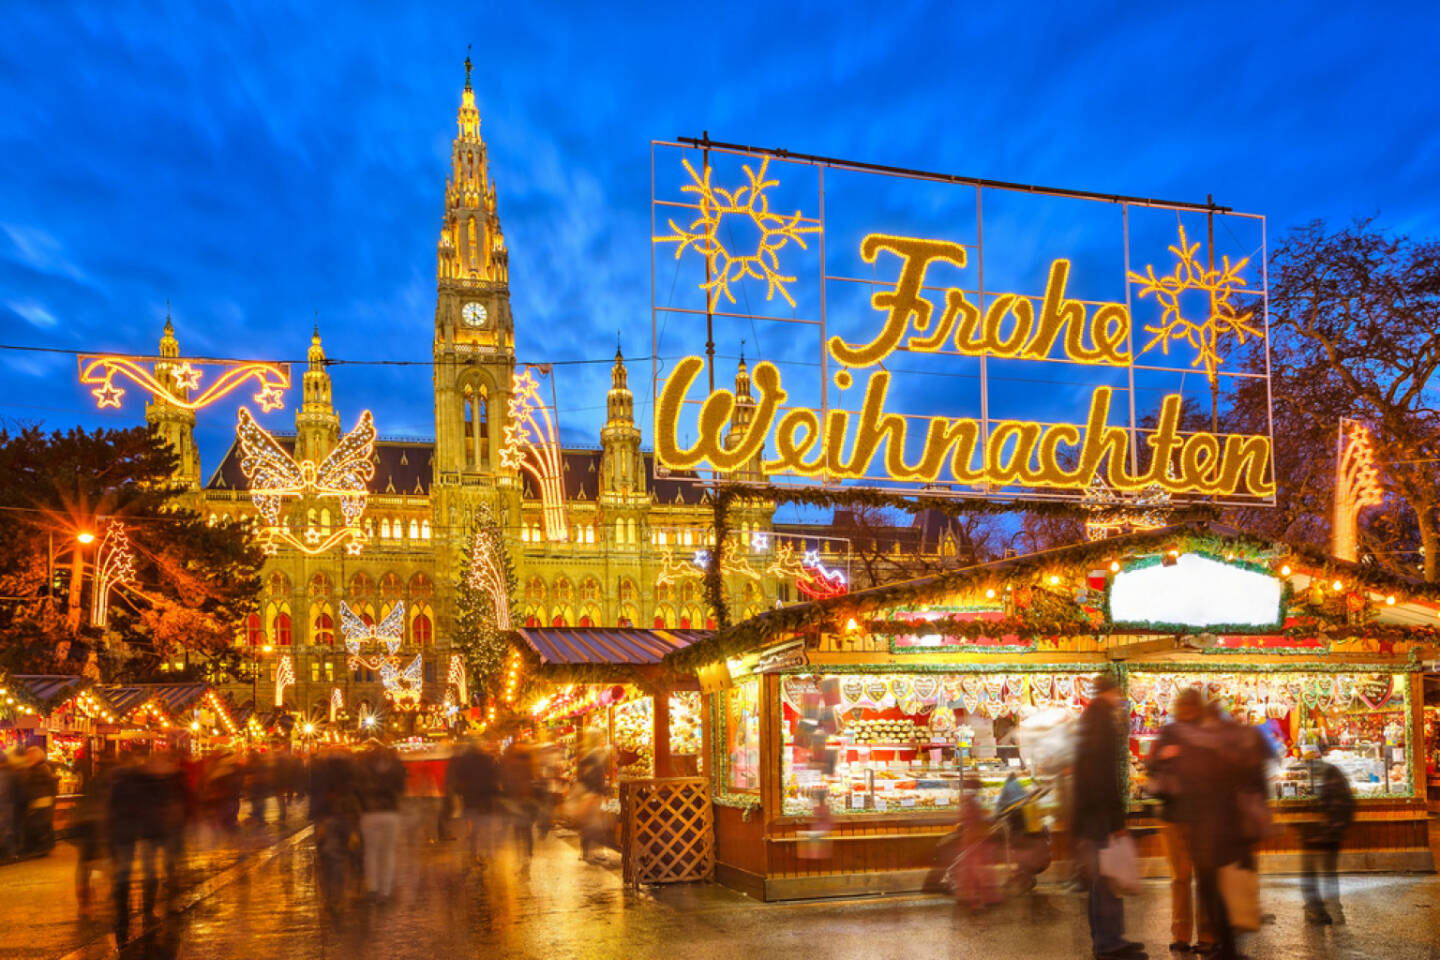 Weihnachten, Weihnachtsmarkt, Adventmarkt, http://www.shutterstock.com/de/pic-161744594/stock-photo-traditional-christmas-market-in-vienna-austria.html